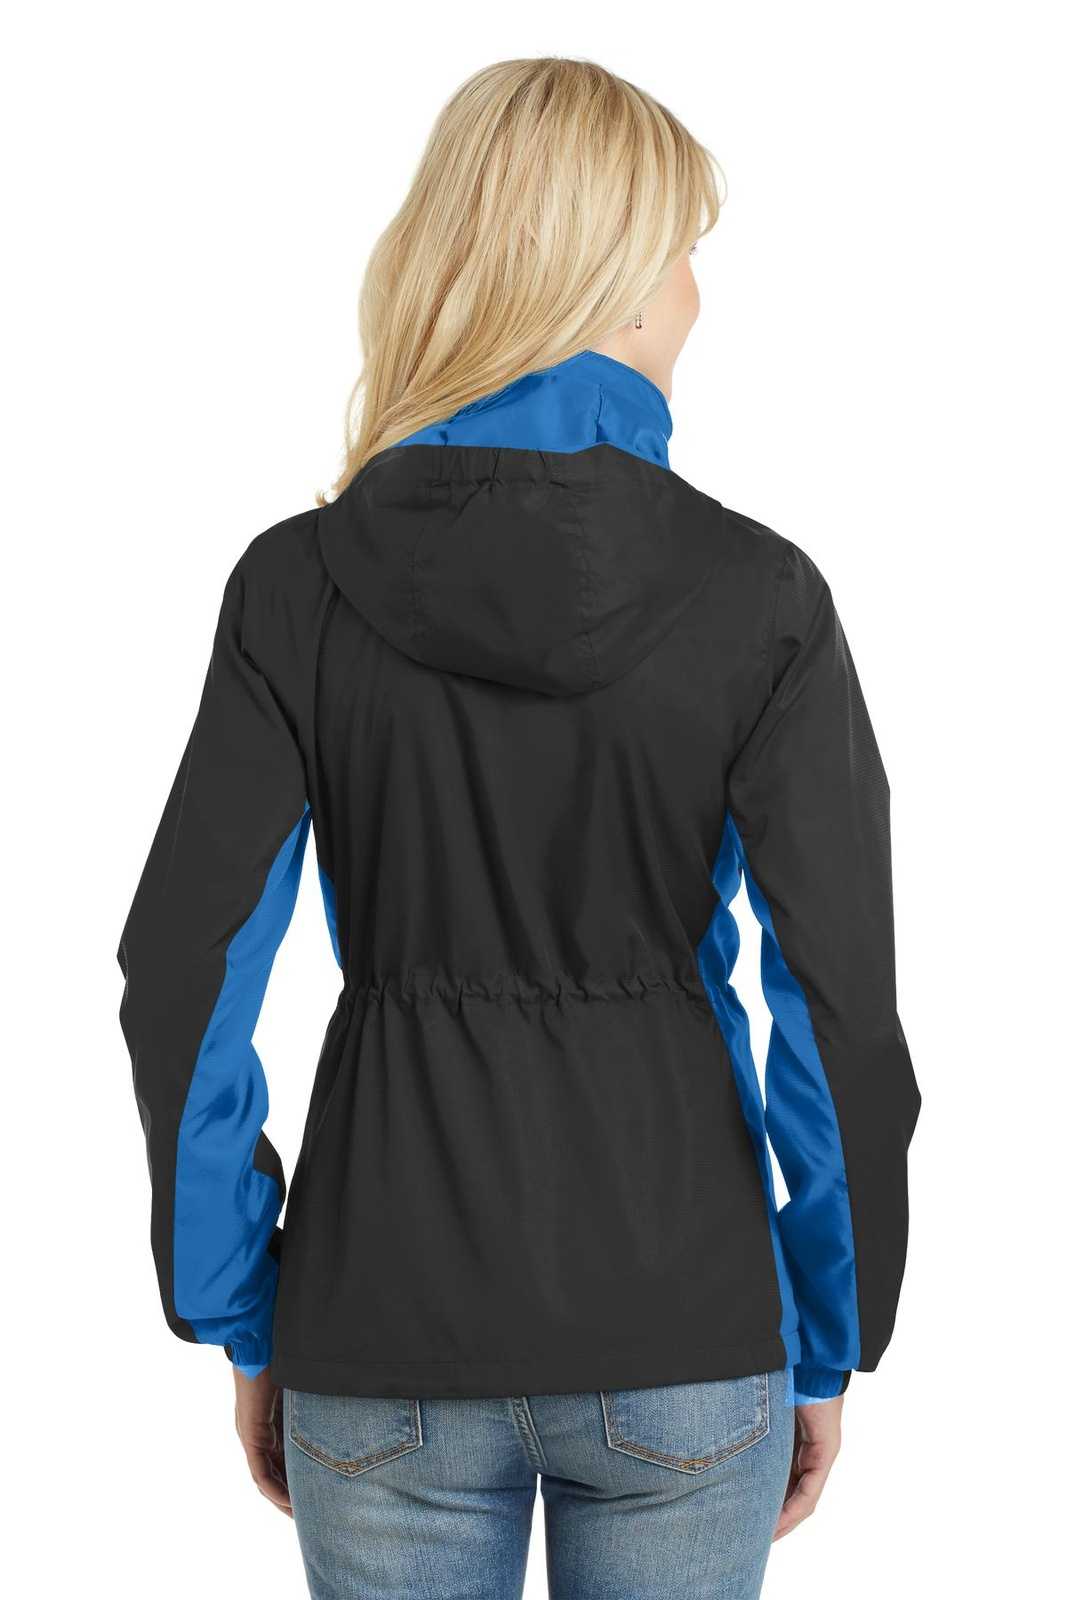 Port Authority L330 Ladies Core Colorblock Wind Jacket - Black Imperial Blue - HIT a Double - 1